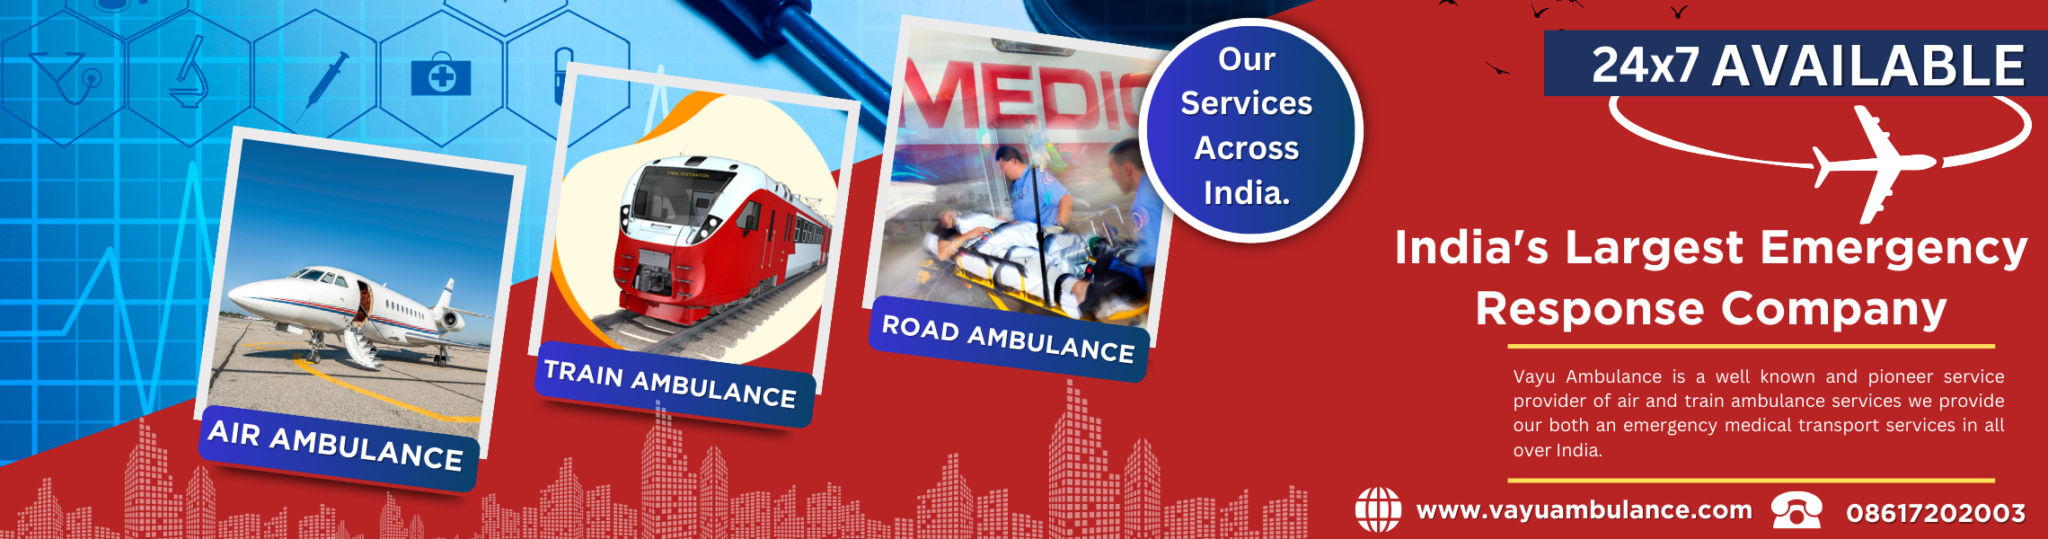 Ambulance Service, roam ambulance, ICU Ambulance Ventilators Ambulance